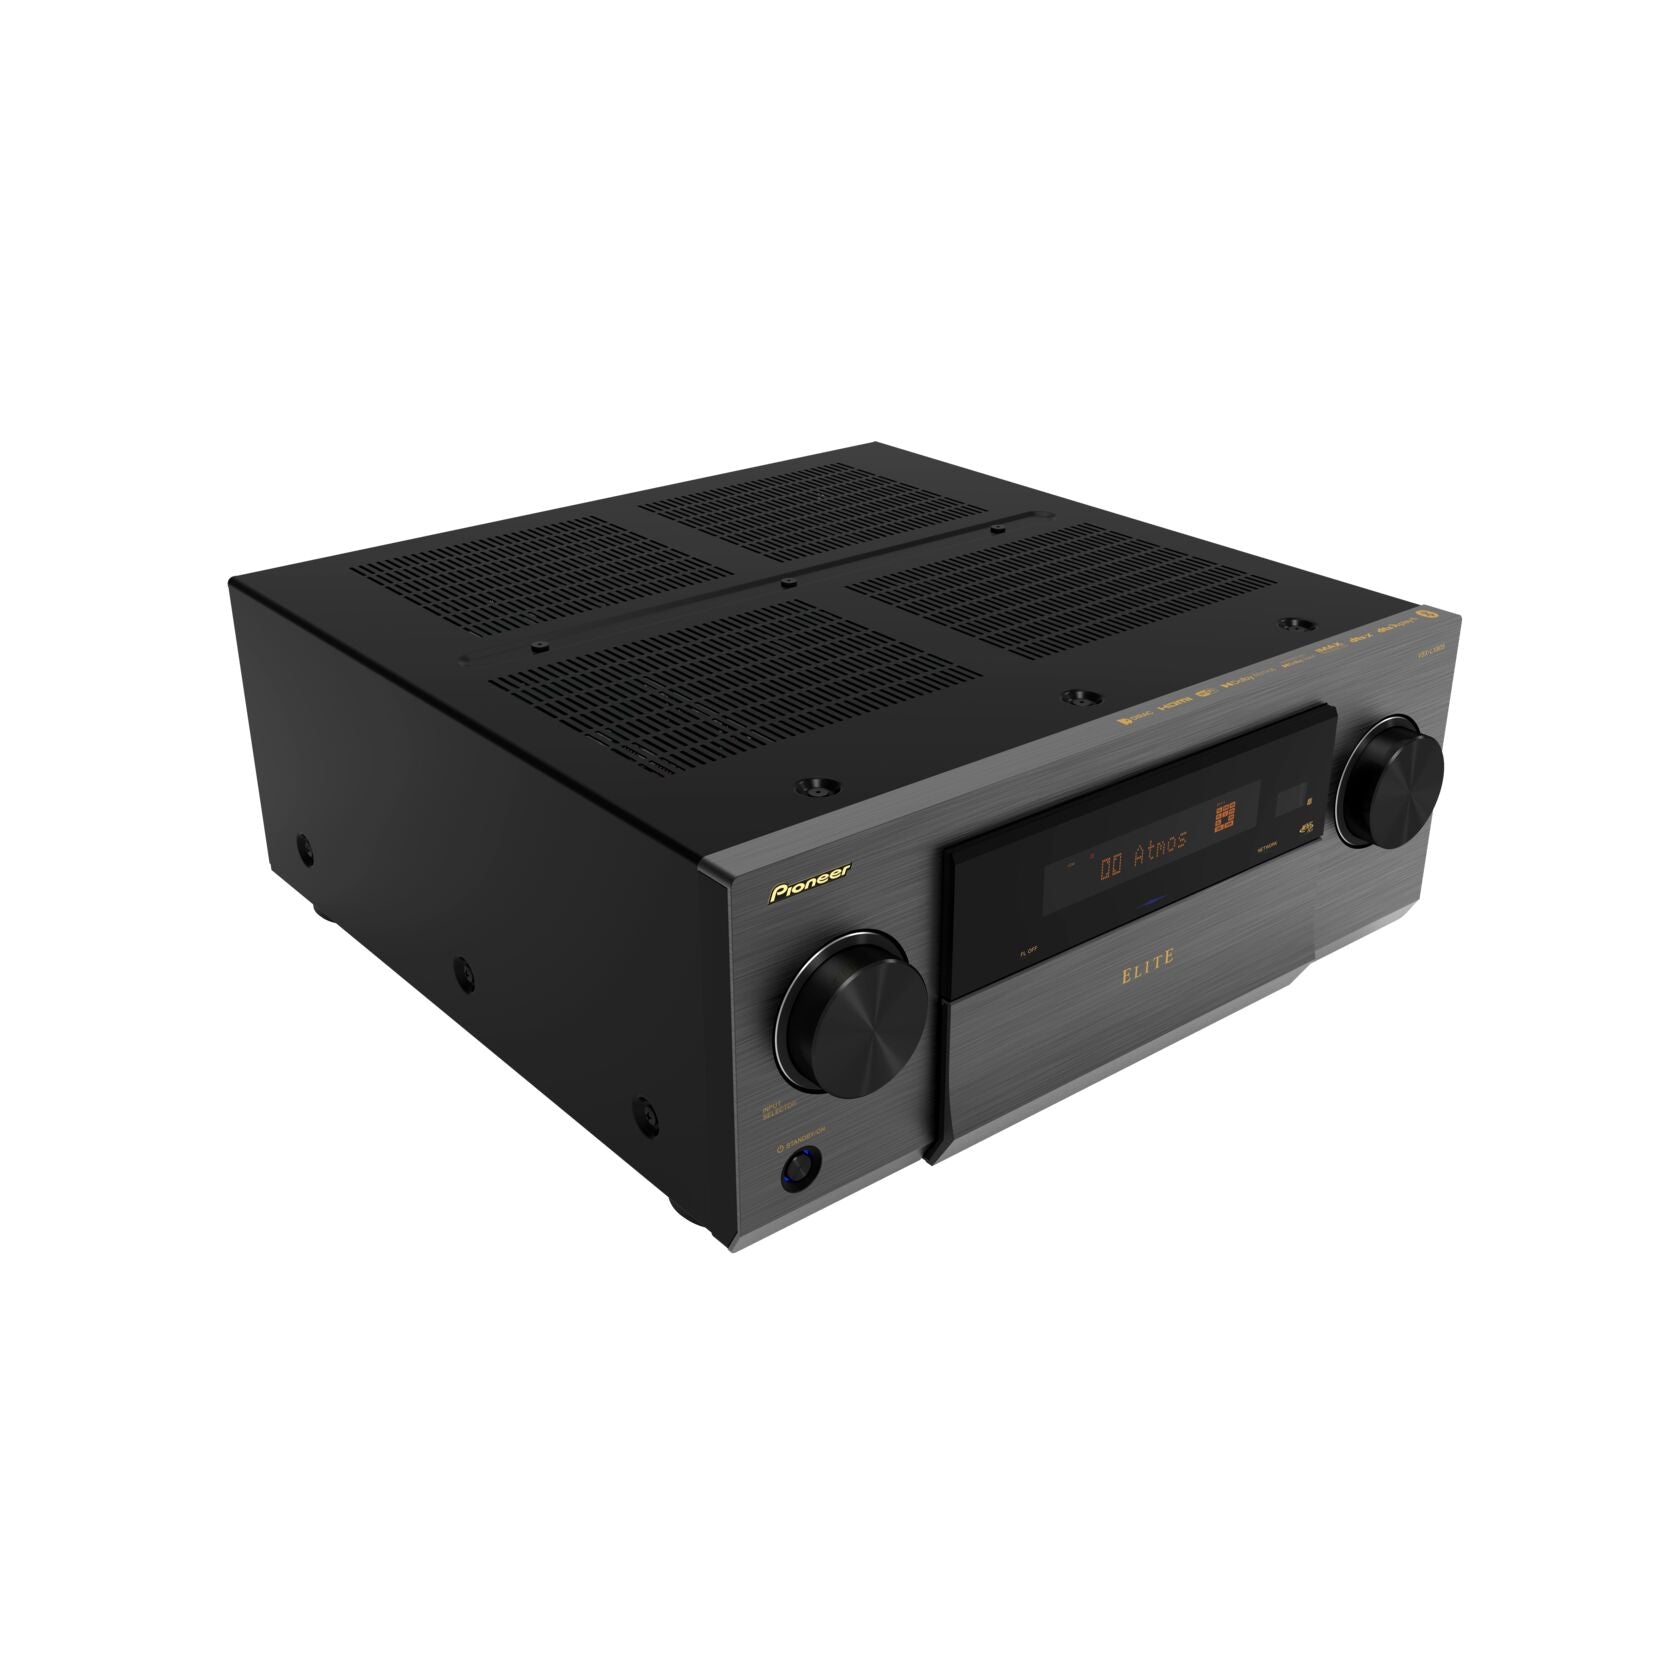 Pioneer VSX-LX805 Elite 11.4 Channel Network AV Receiver